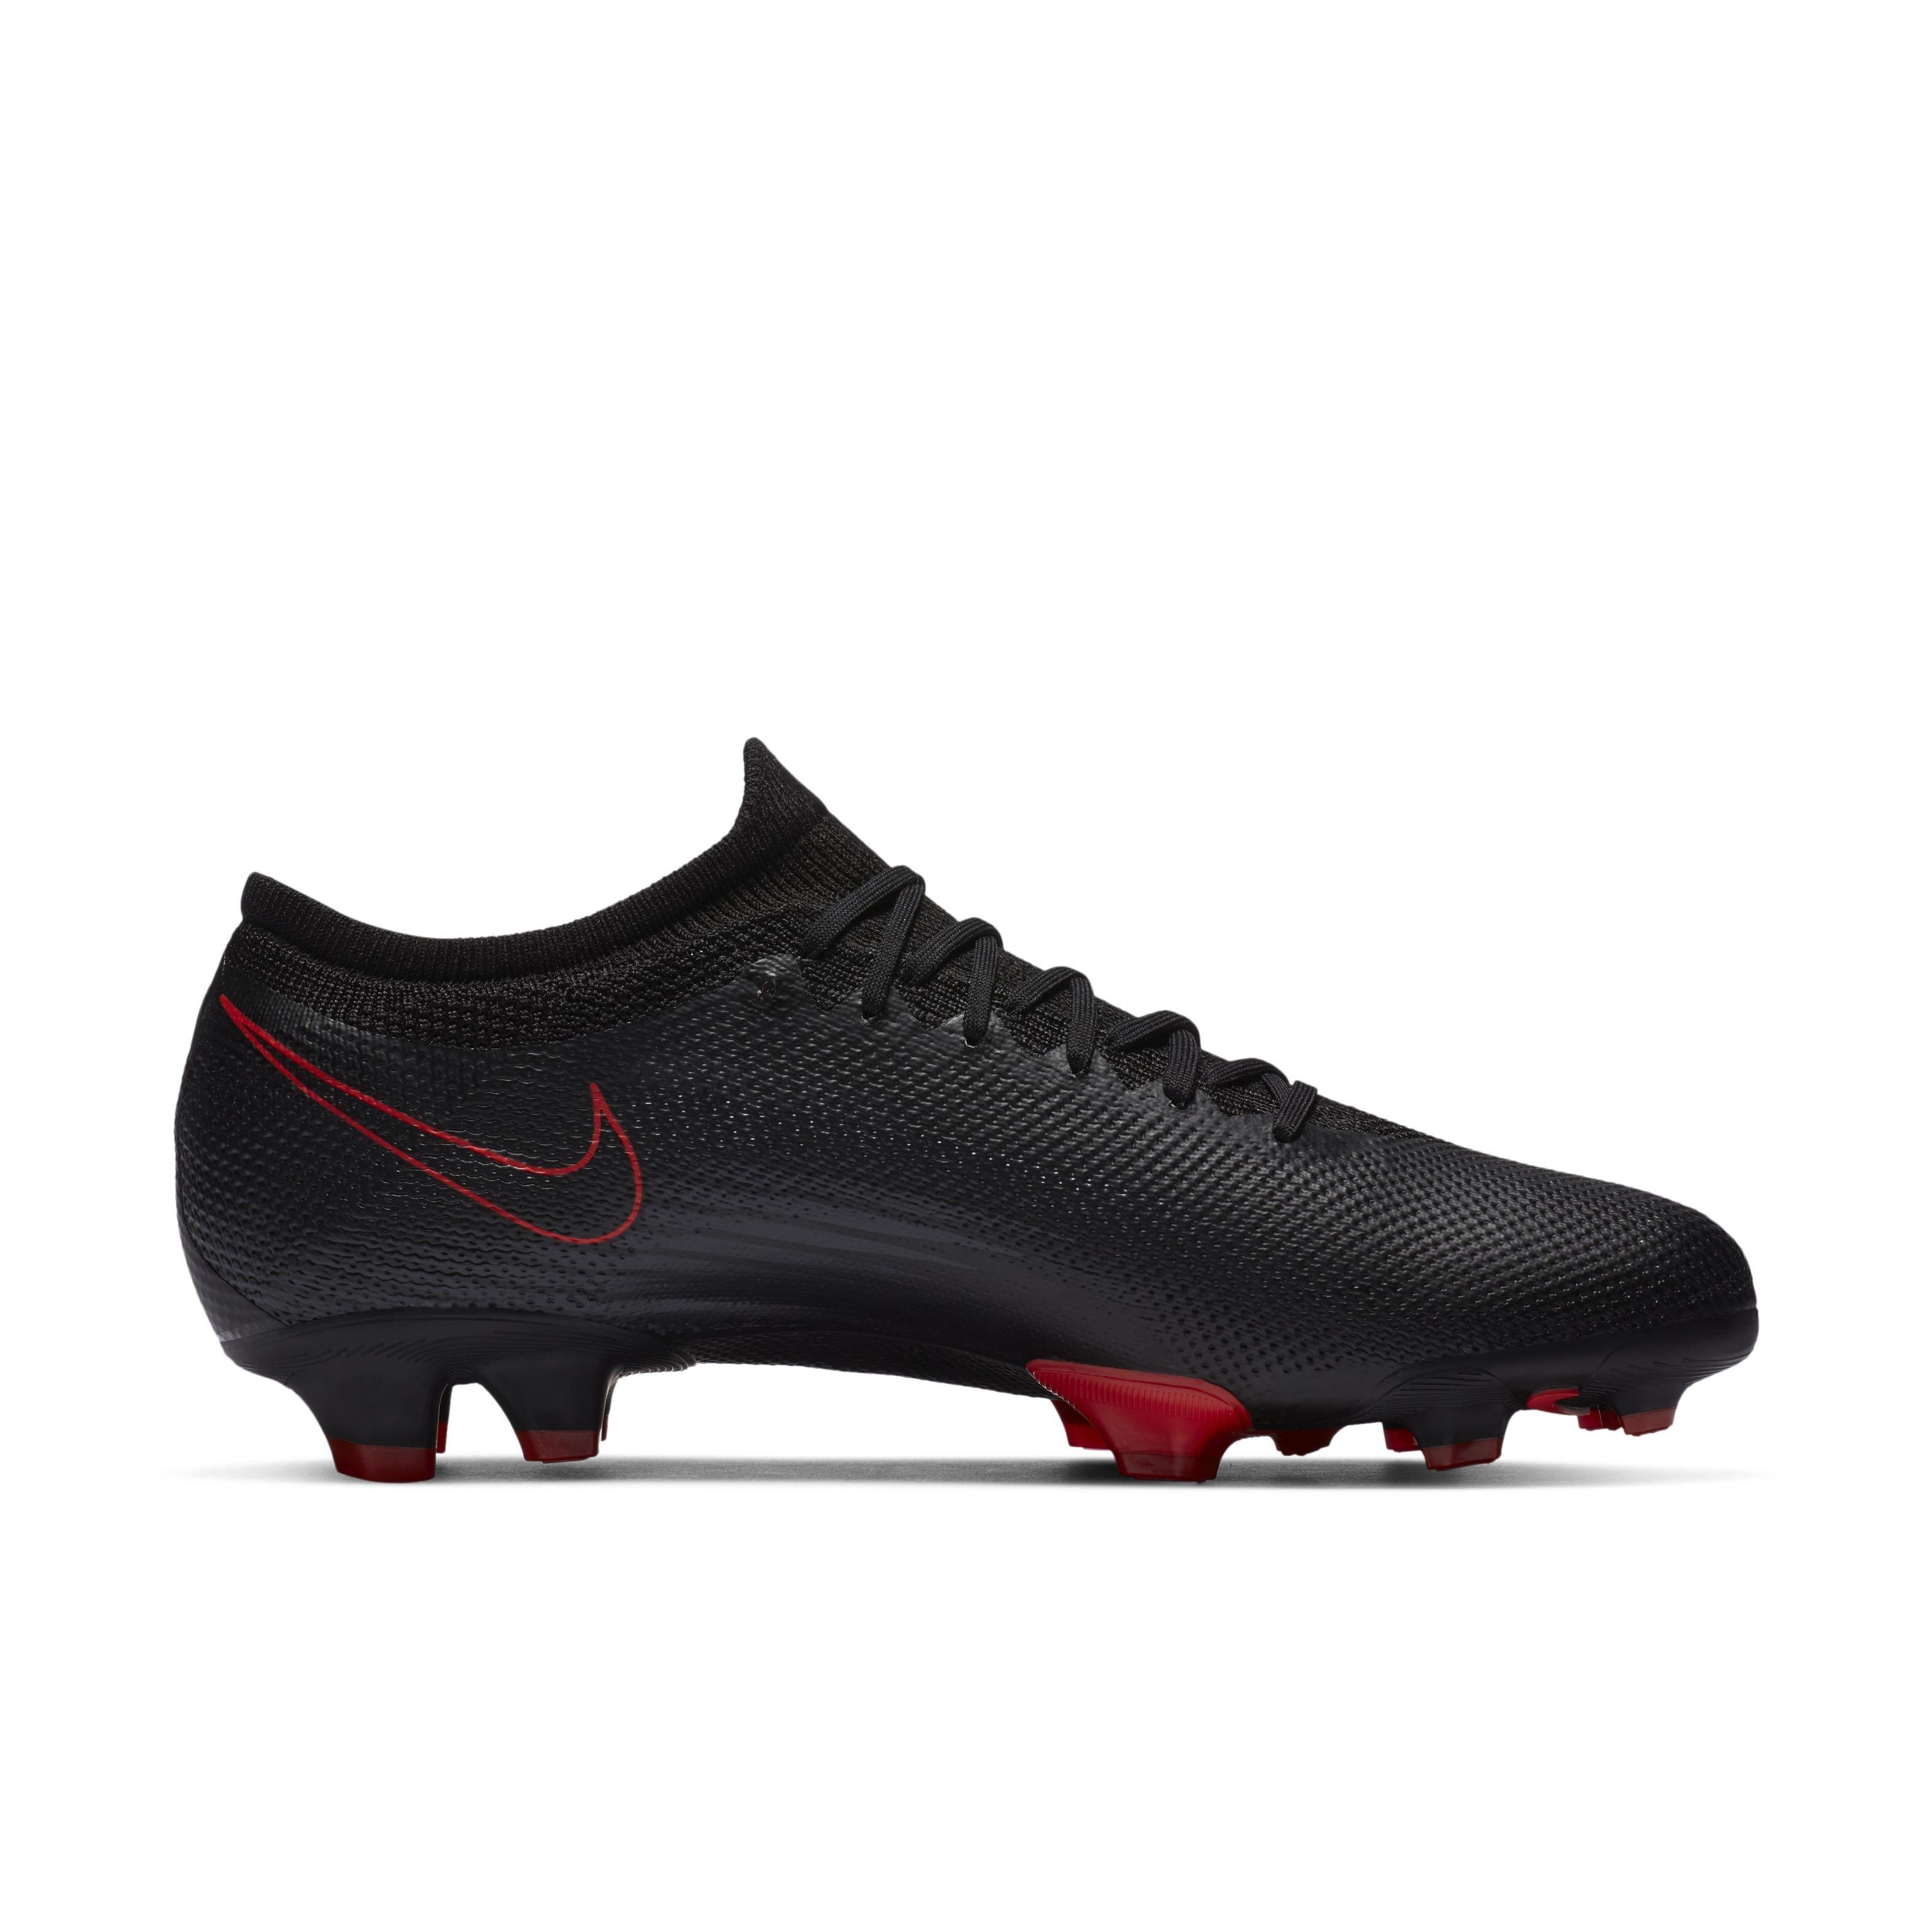 Fervent Weggelaten eigendom Nike Mercurial Vapor 13 Pro FG Unisex "Black/Red" Firm-Ground Soccer Cleat